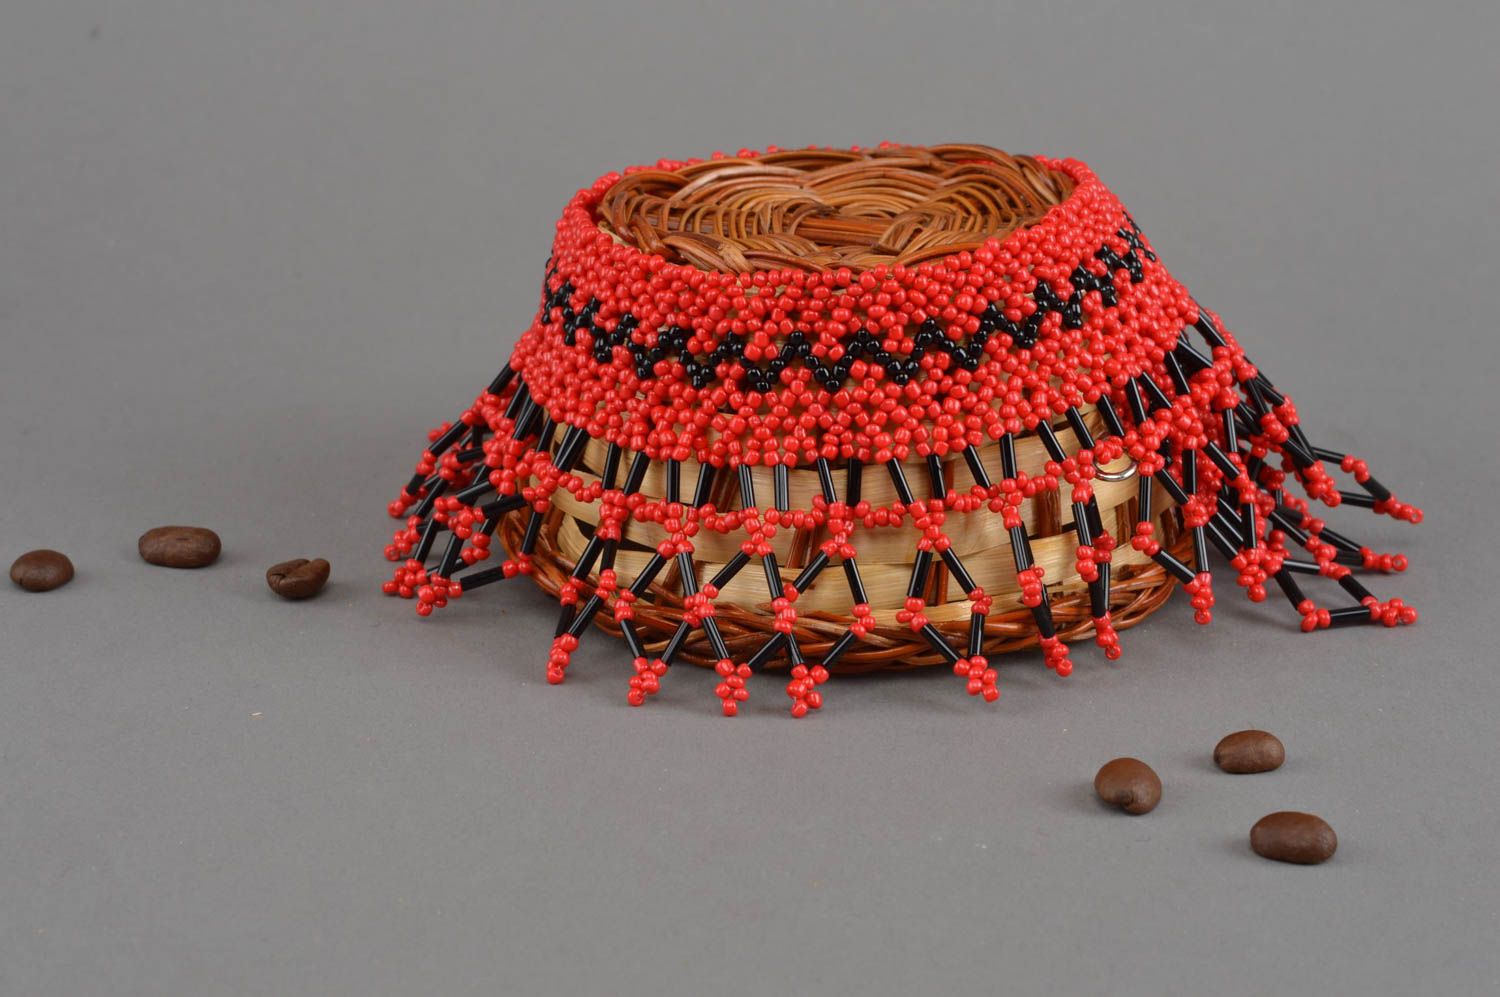 Ожерелье из бисера и стекляруса плетеное ручной работы красивое авторское фото 1